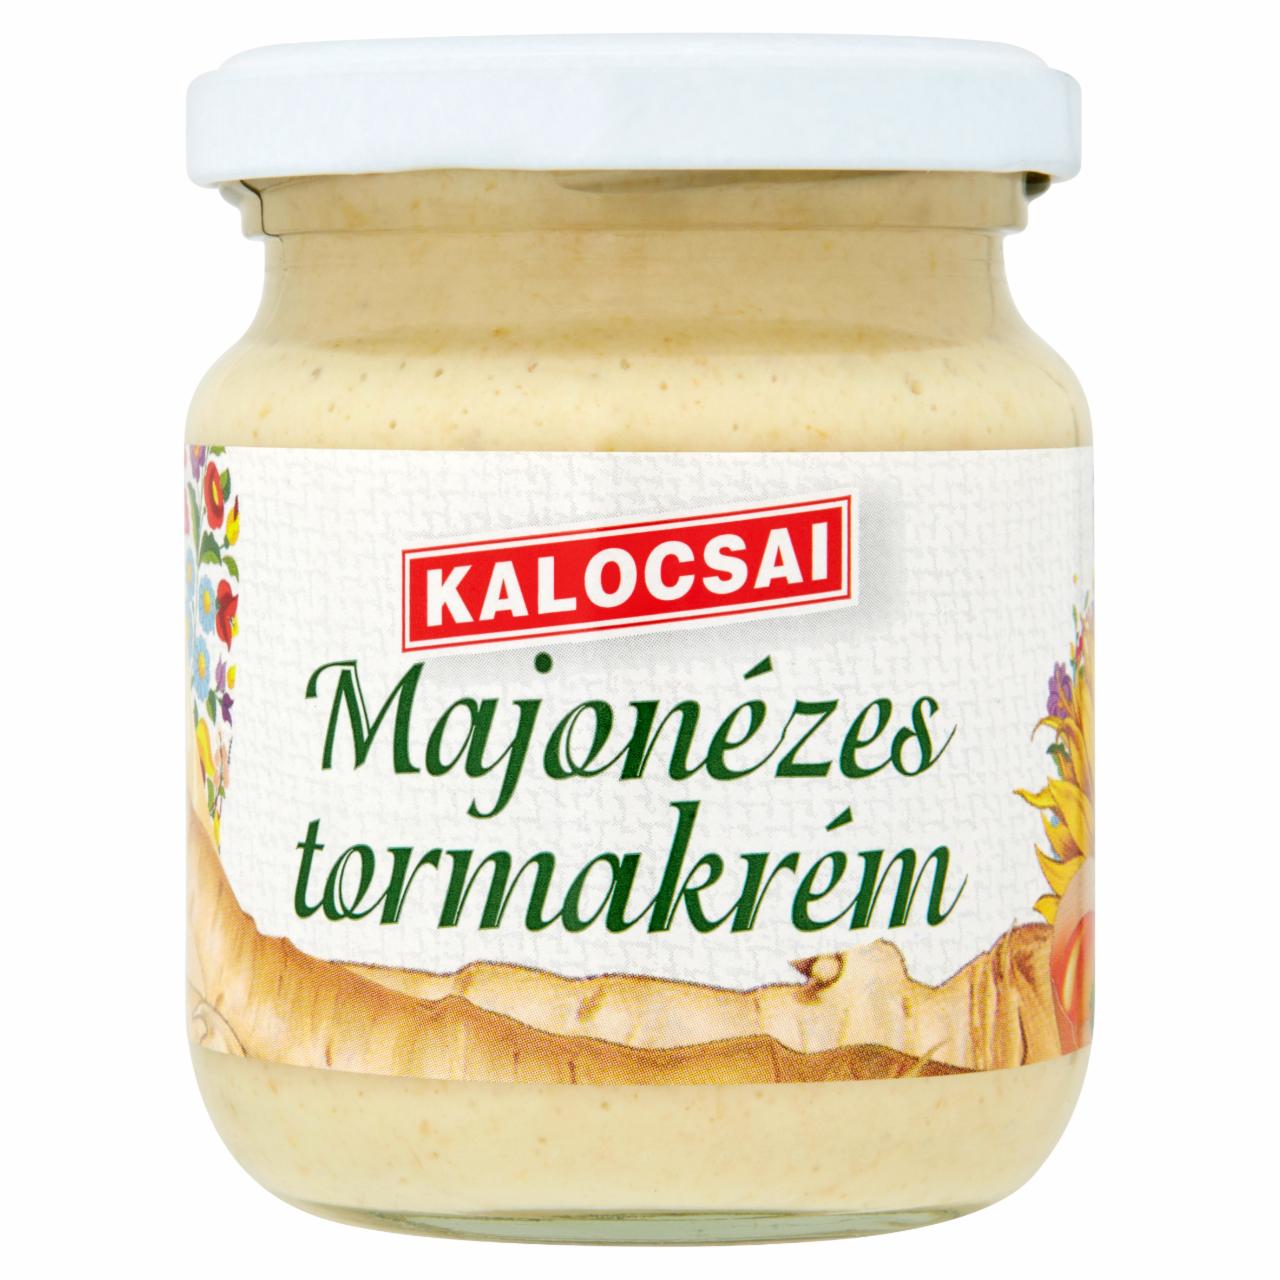 Képek - Kalocsai majonézes tormakrém 210 g